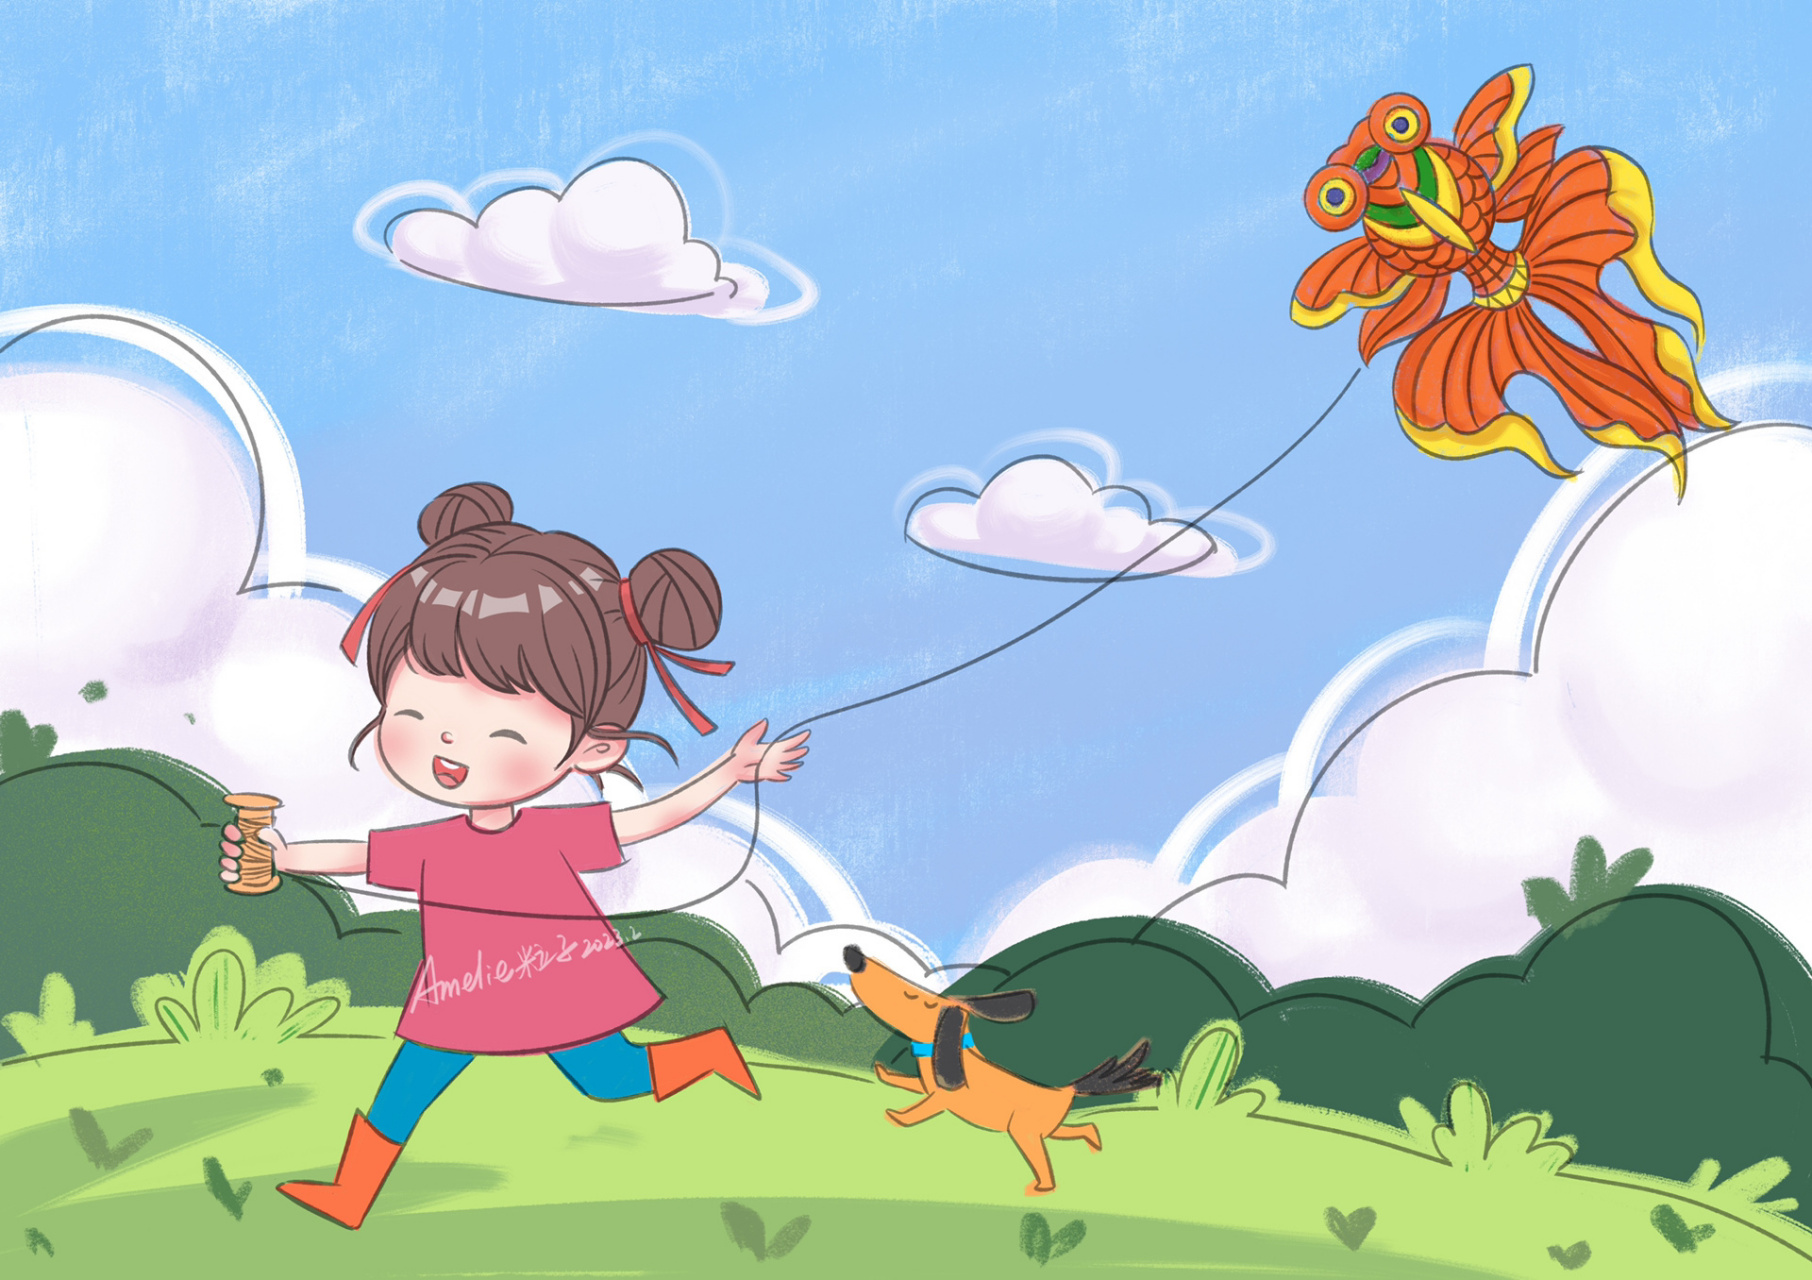 春天小孩放风筝的图画图片